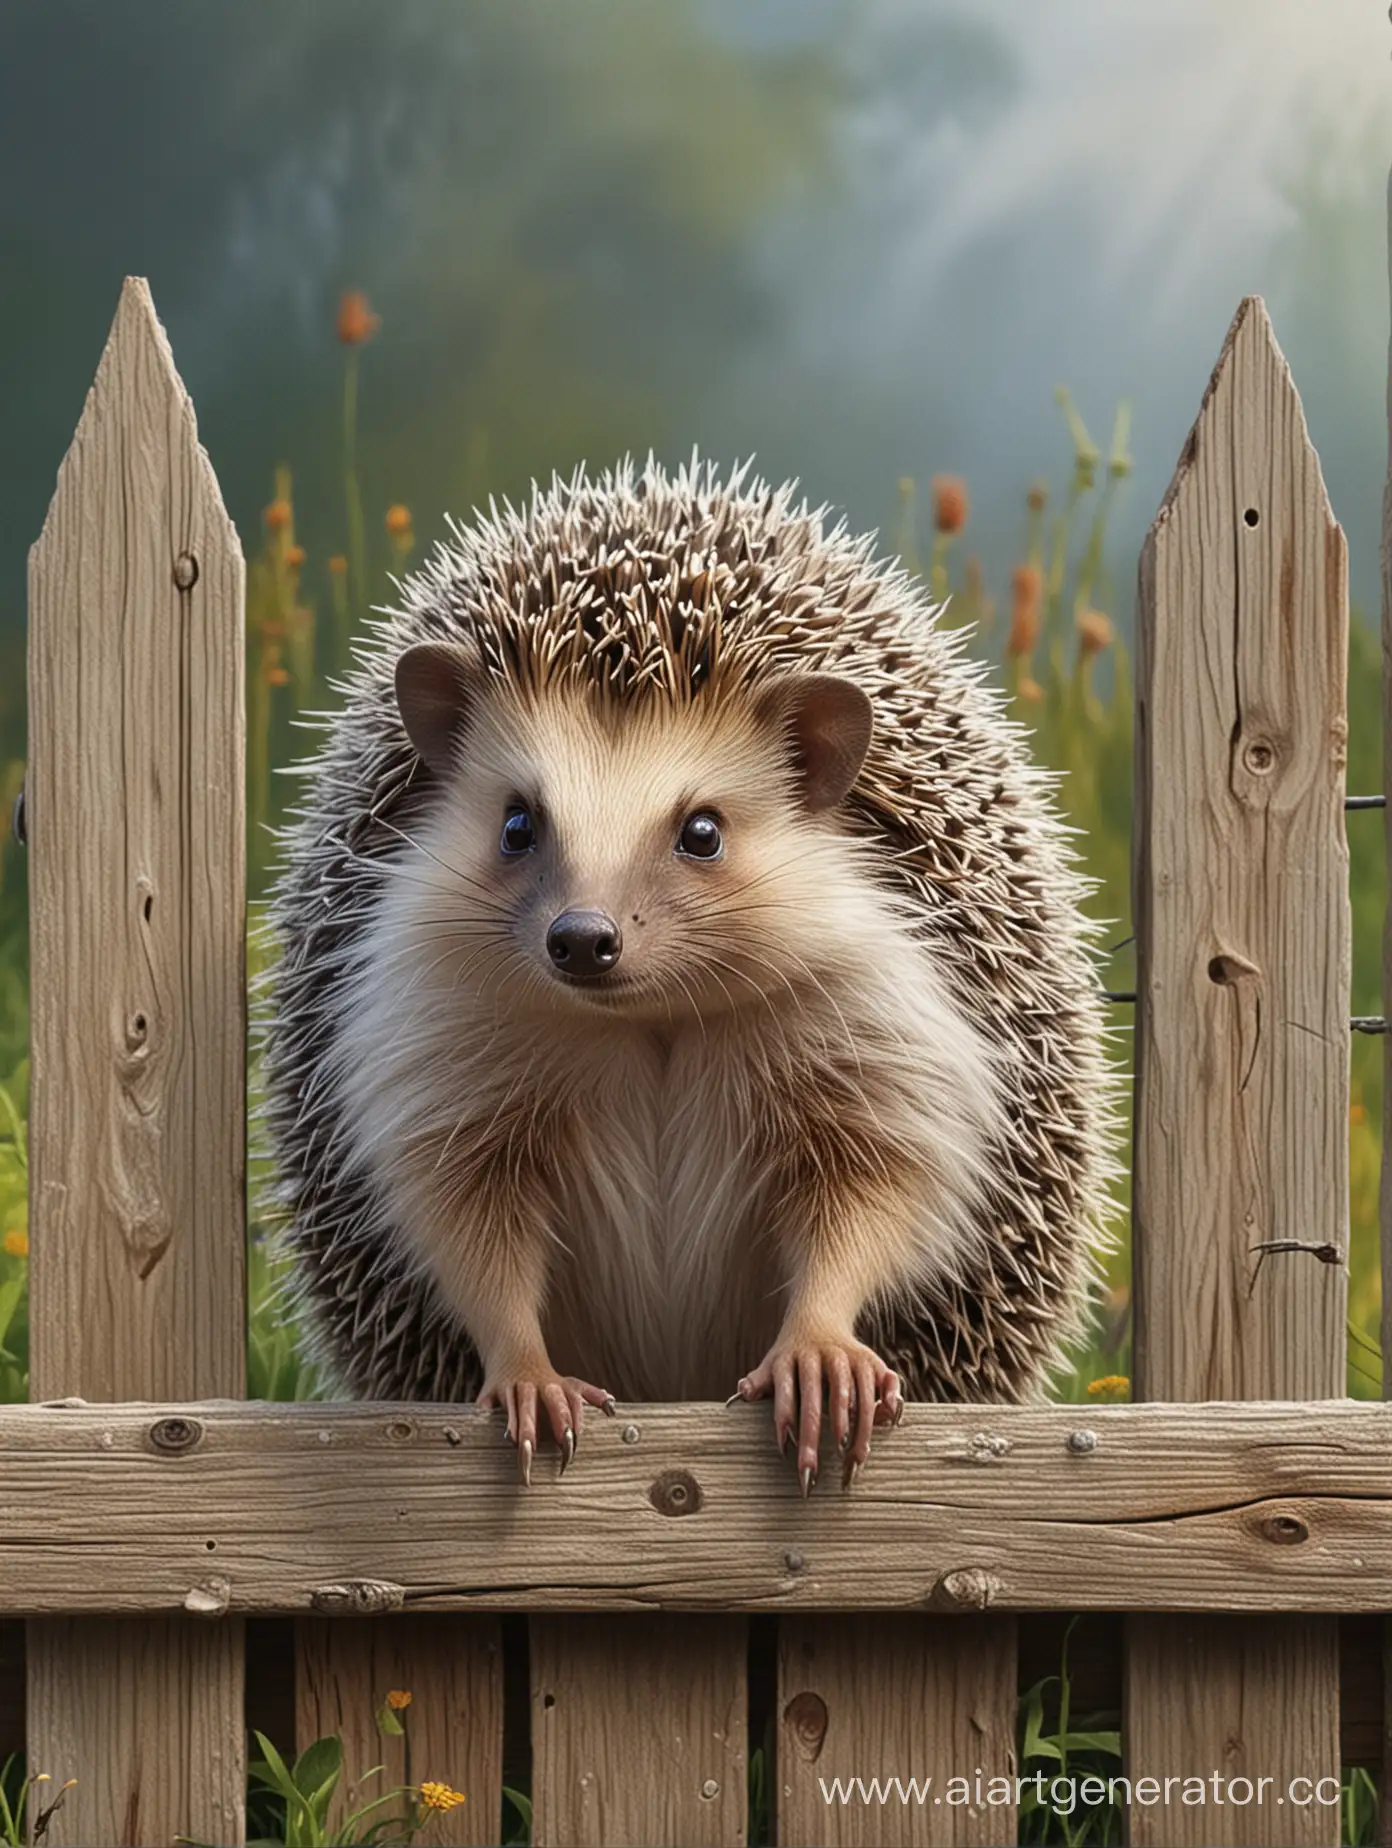 Hedgehog-Painting-Fence-Cute-Animal-Artist-Illustration